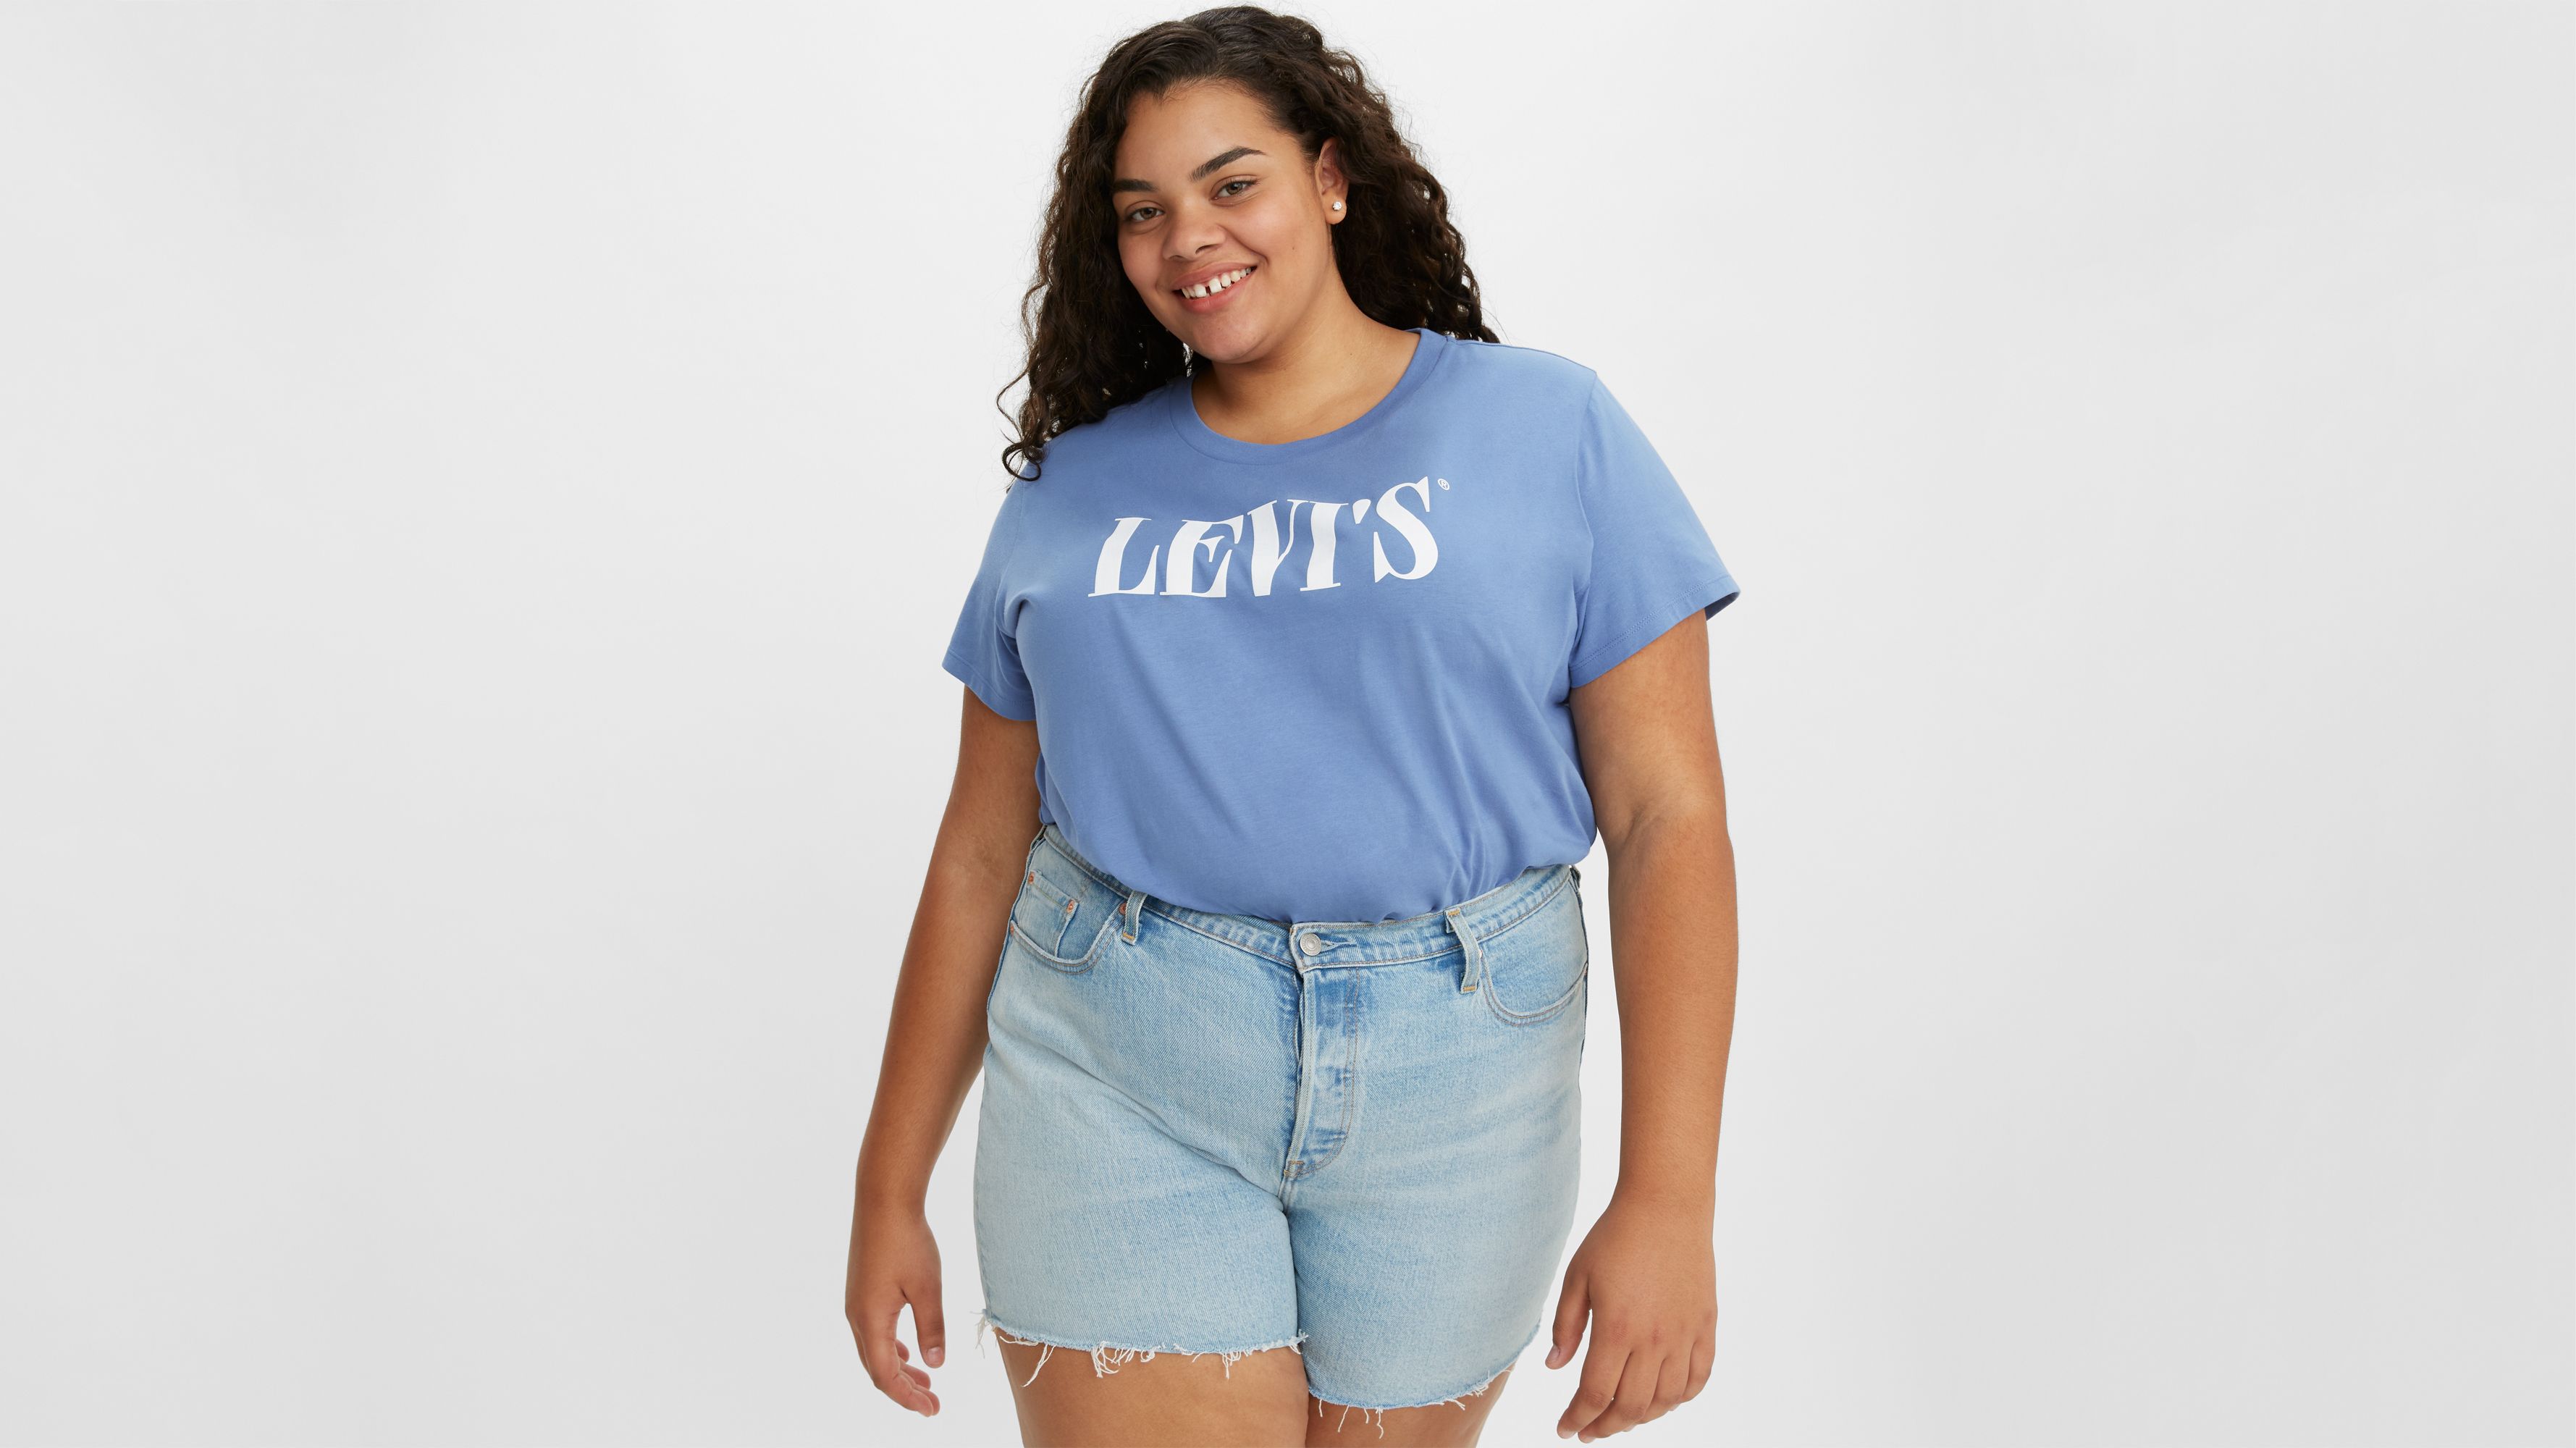 levis t shirts women's sale